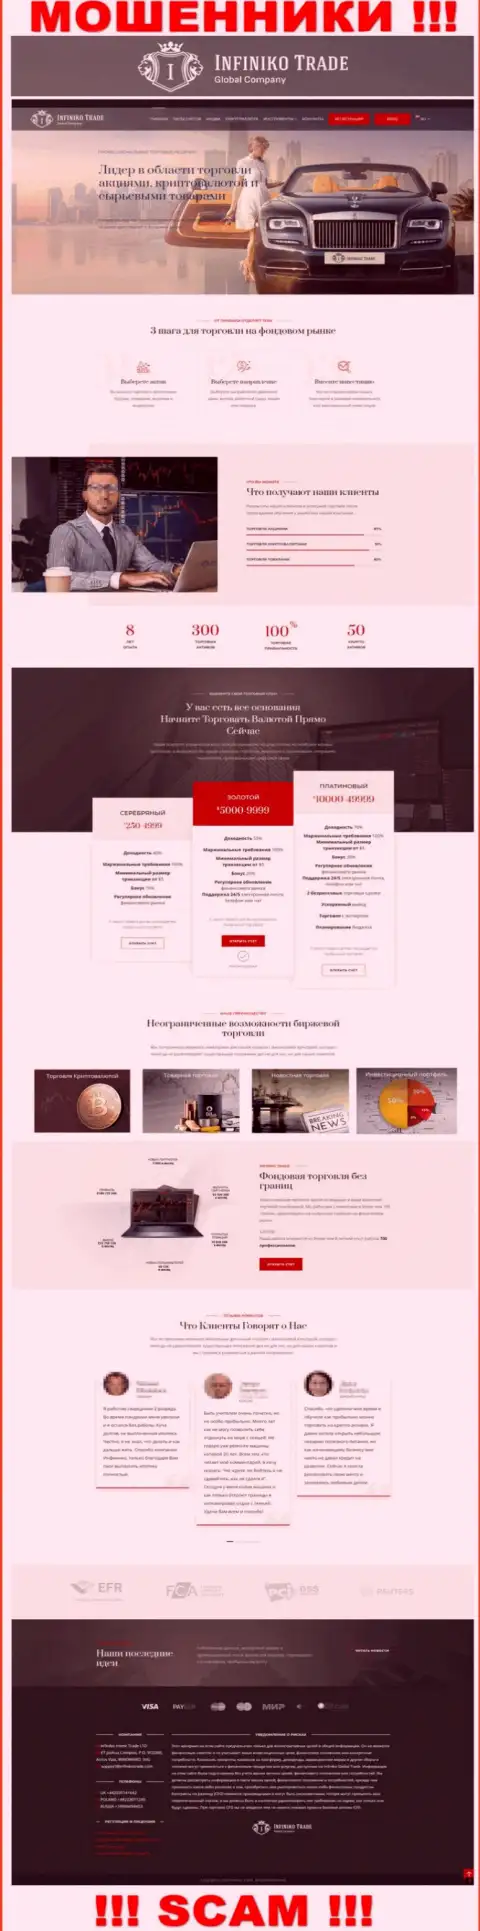 Официальная web страница мошеннического проекта Инфинико Инвест Трейд ЛТД